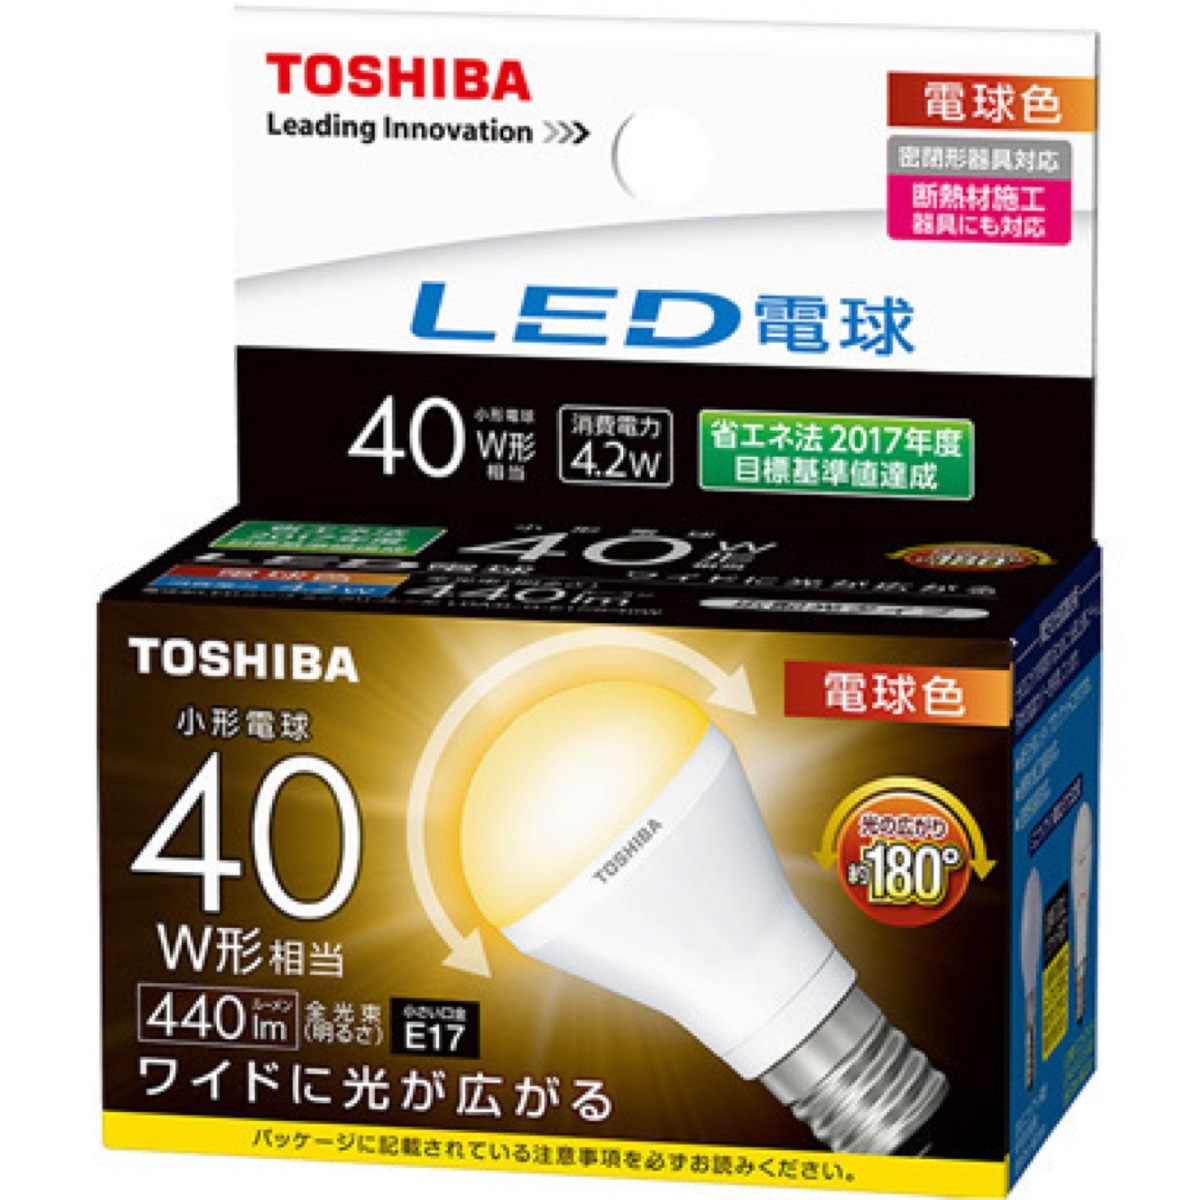 東芝 LDA4L-G-E17/S/40W LED電球 ミニクリプトン形 断熱材施工器具対応 広配光タイプ 小形電球 40W形相当 40W LDA4L-G-E17S40W TOSHIBA (06)